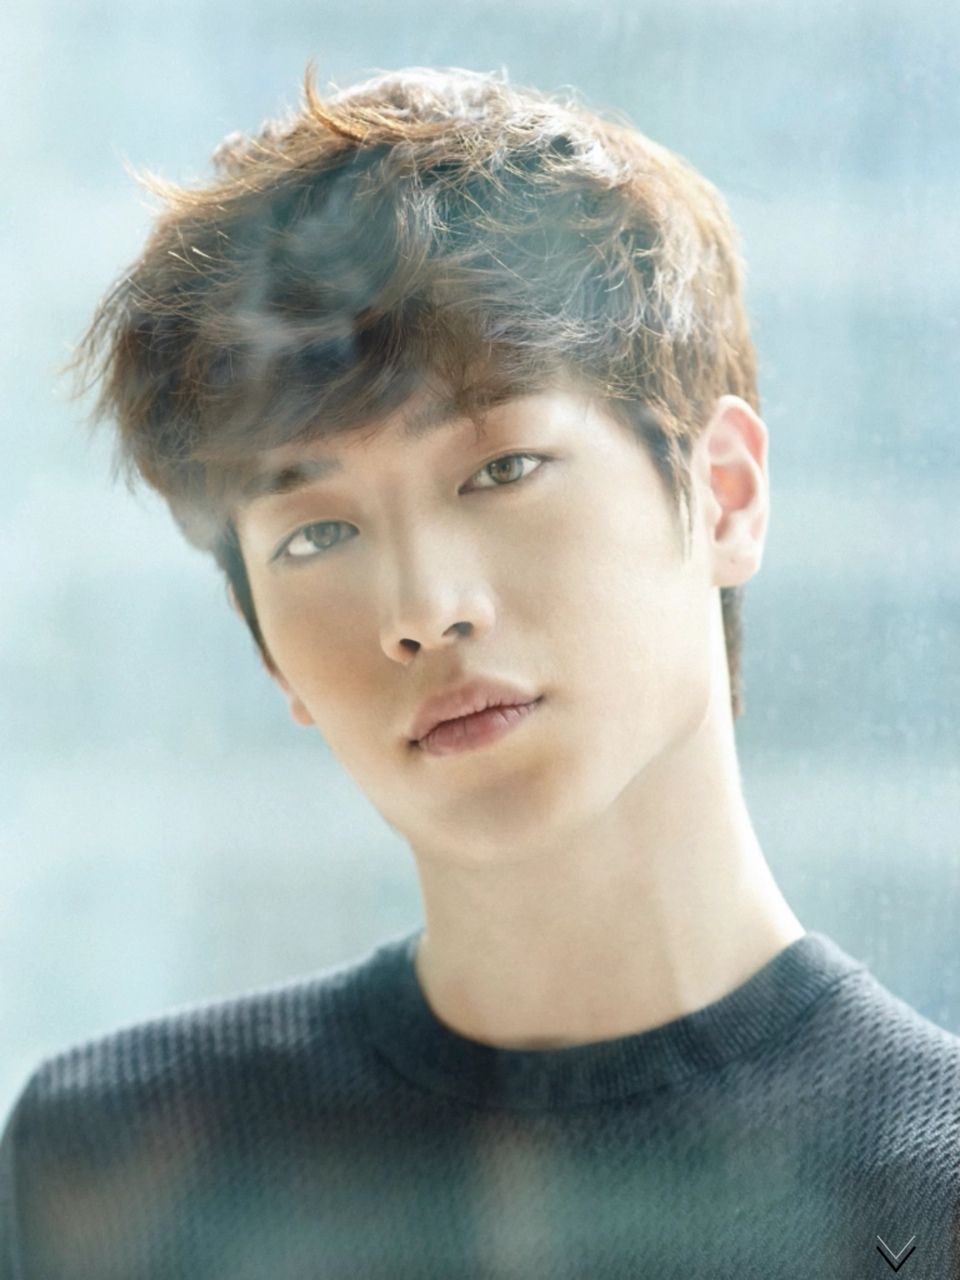 Fakta Seo Kang Joon Pemilik Mata Coklat Yang Memukau Fakta Id